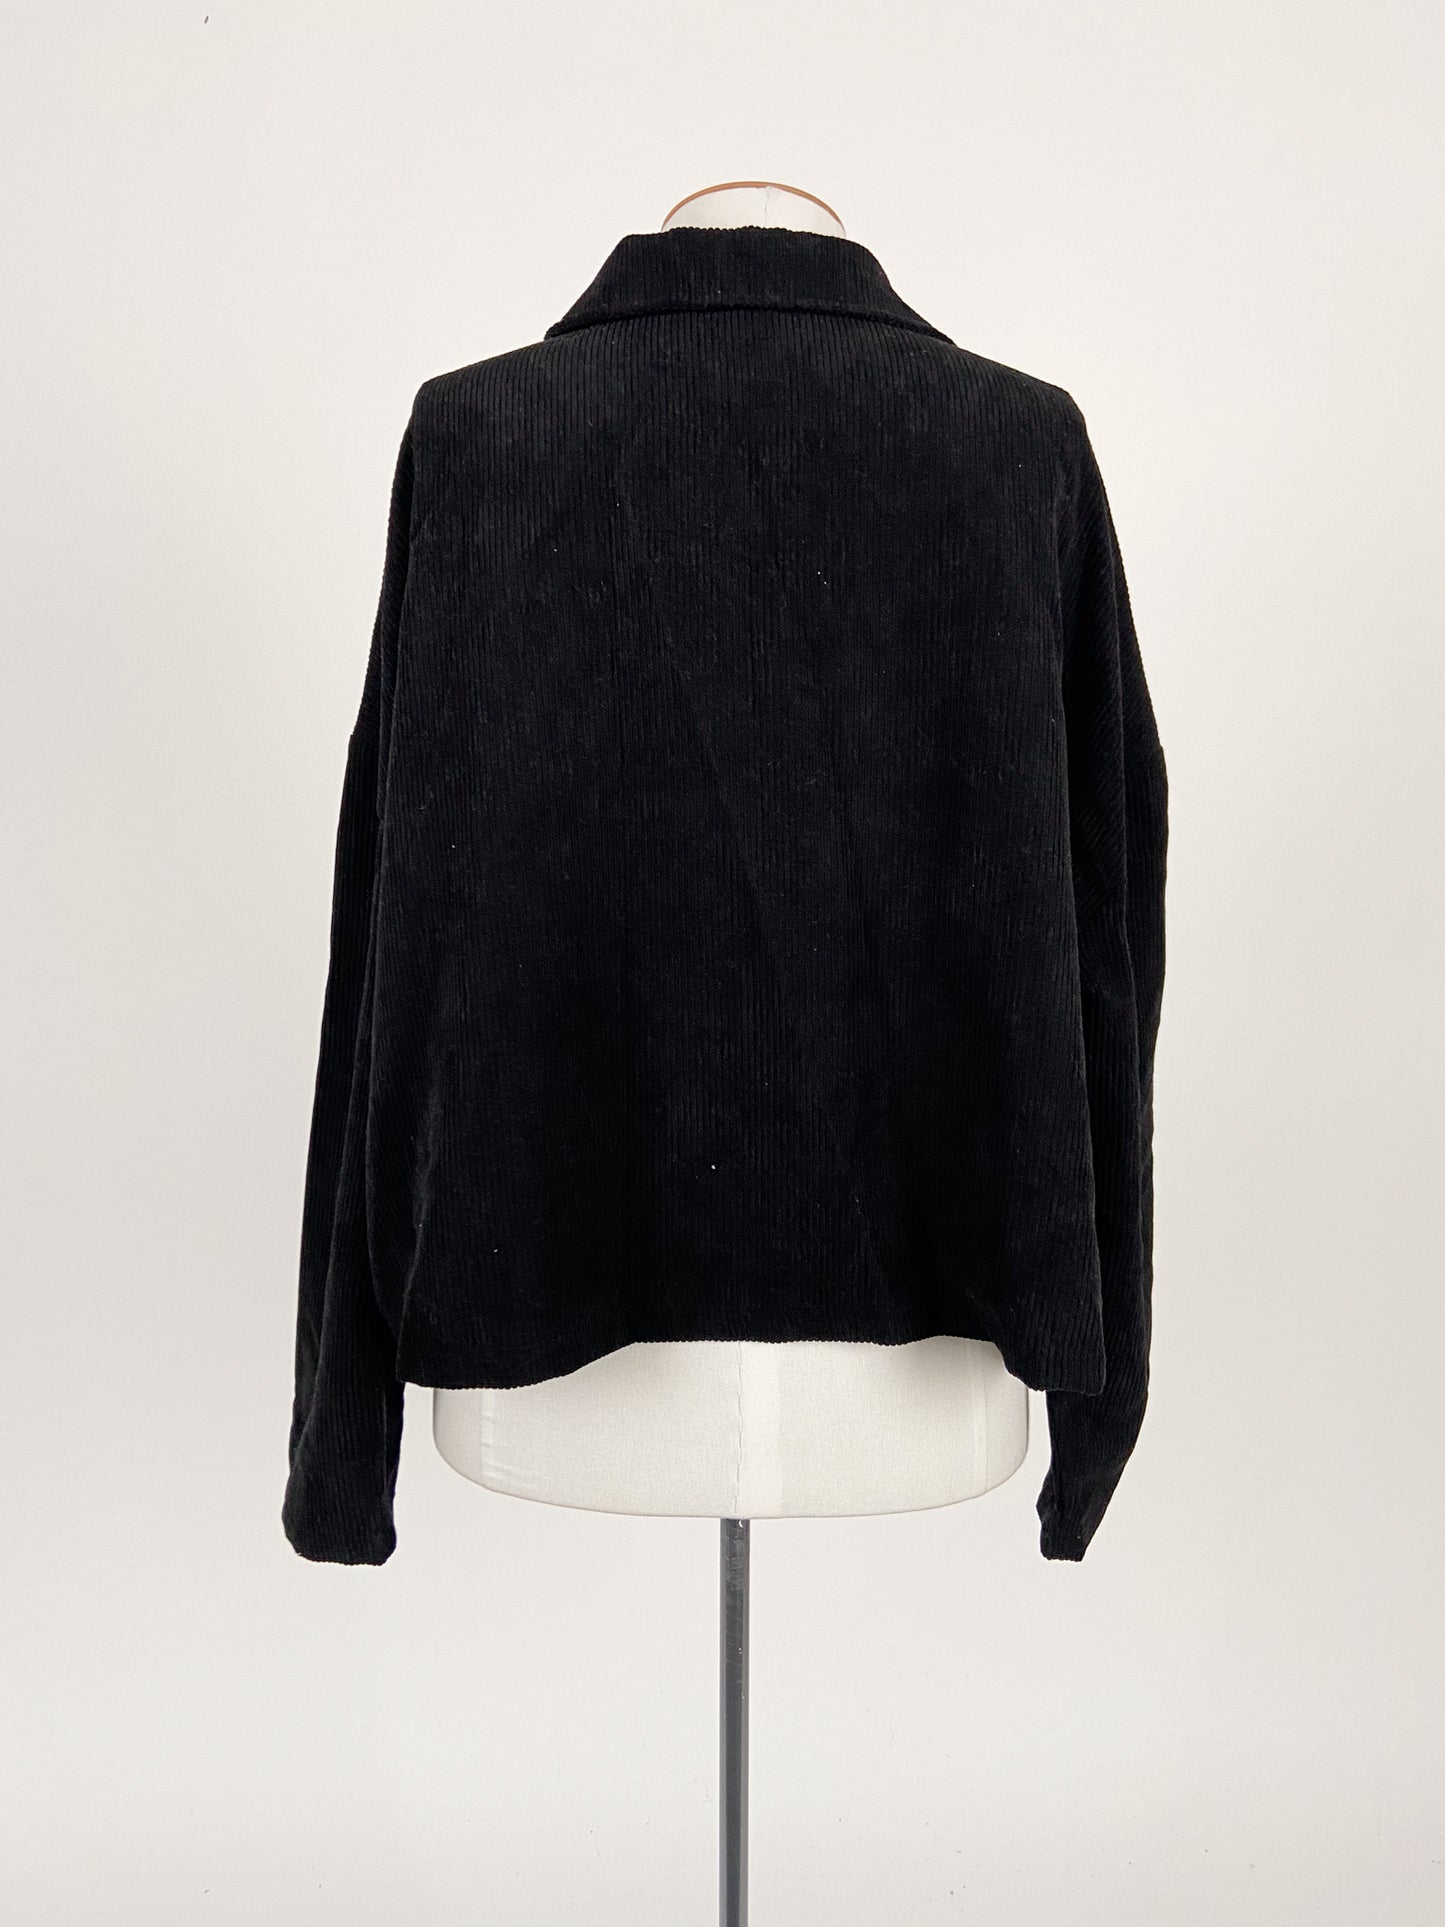 Shein | Black Casual/Workwear Jacket | Size 4XL